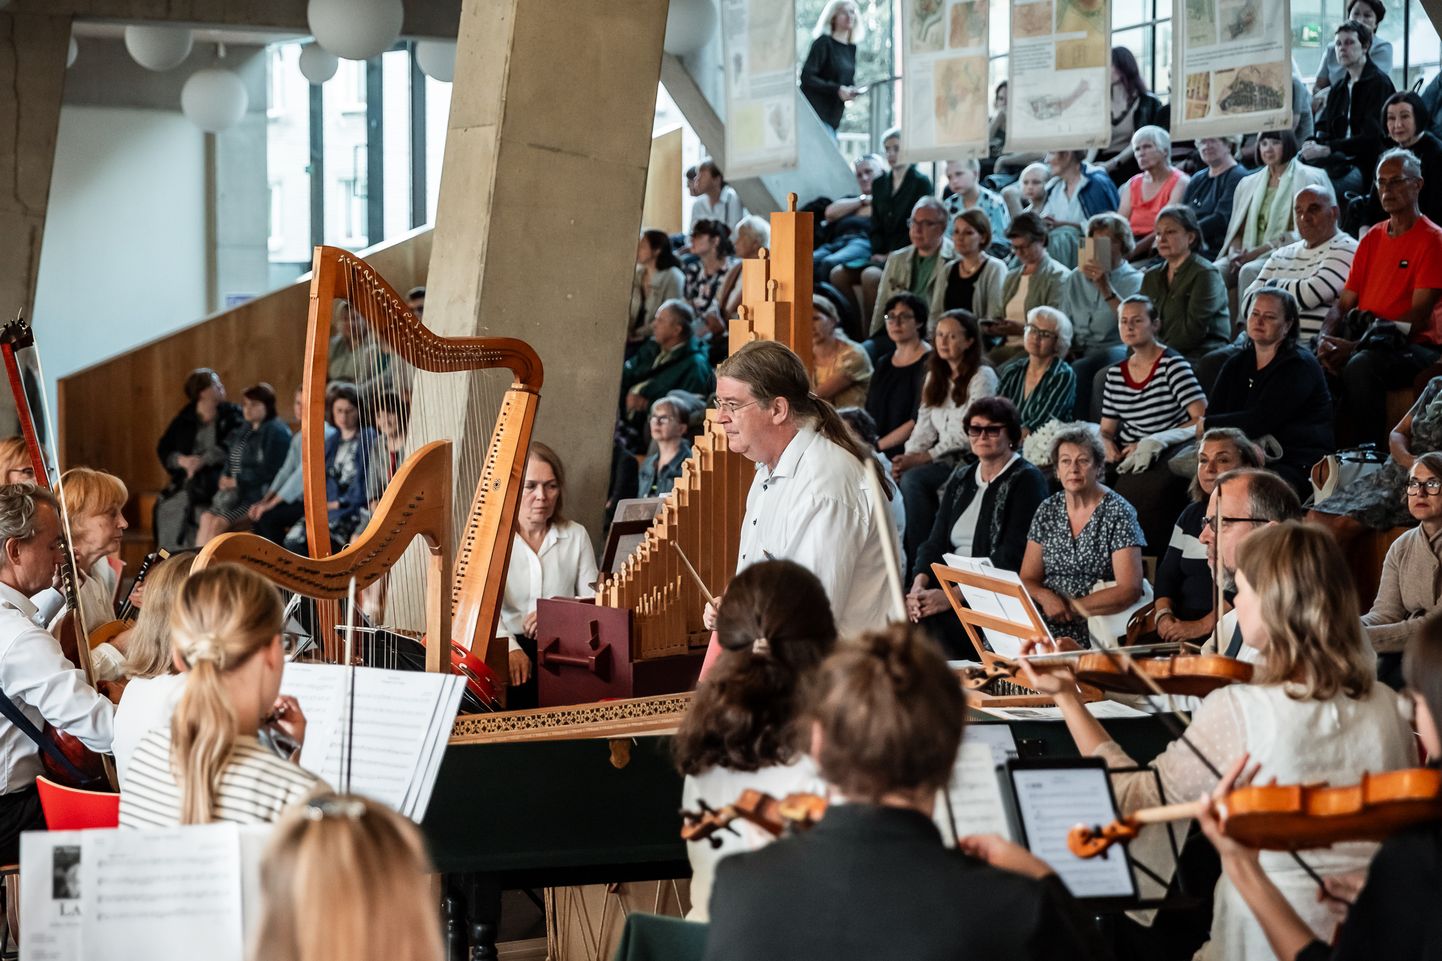 Таллиннский барочный оркестр под управлением капельмейстера Эндрю Лоуренса-Кинга выступает в фойе Нарвского колледжа, заполненном публикой.